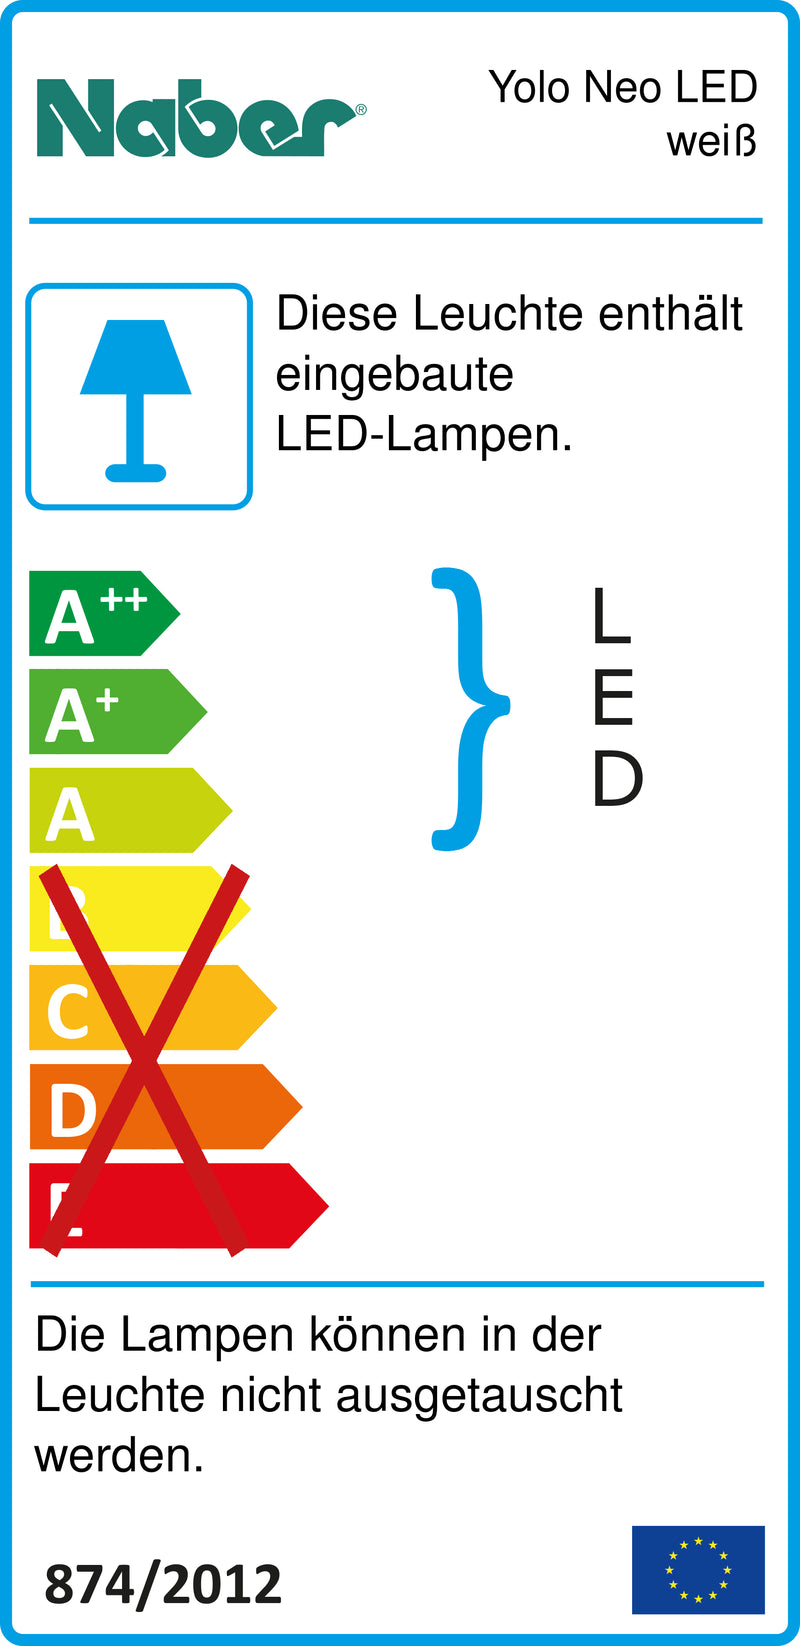 E-Label zu Zeichnung zu Yolo Neo LED weiß als Variante Einzelleuchte m. S., 3000 K warmweiß von Naber GmbH in der Kategorie Lichttechnik in Österreich auf conceptshop.at